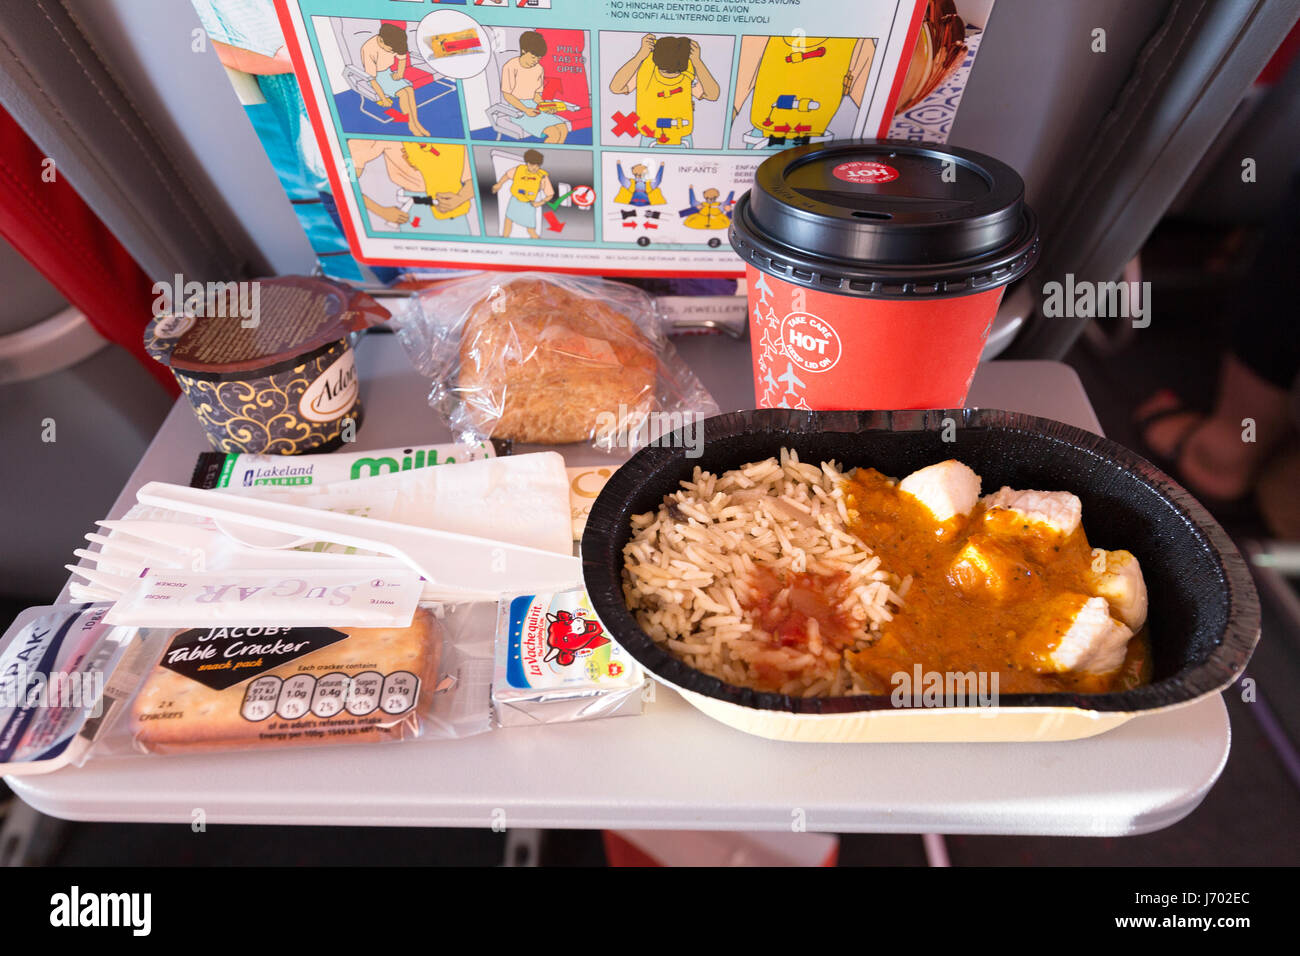 Compagnia aerea alimentare - un pasto al vassoio, Jet2, compagnia aerea su un piano 737-800, volo da Lanzarote a UK Foto Stock